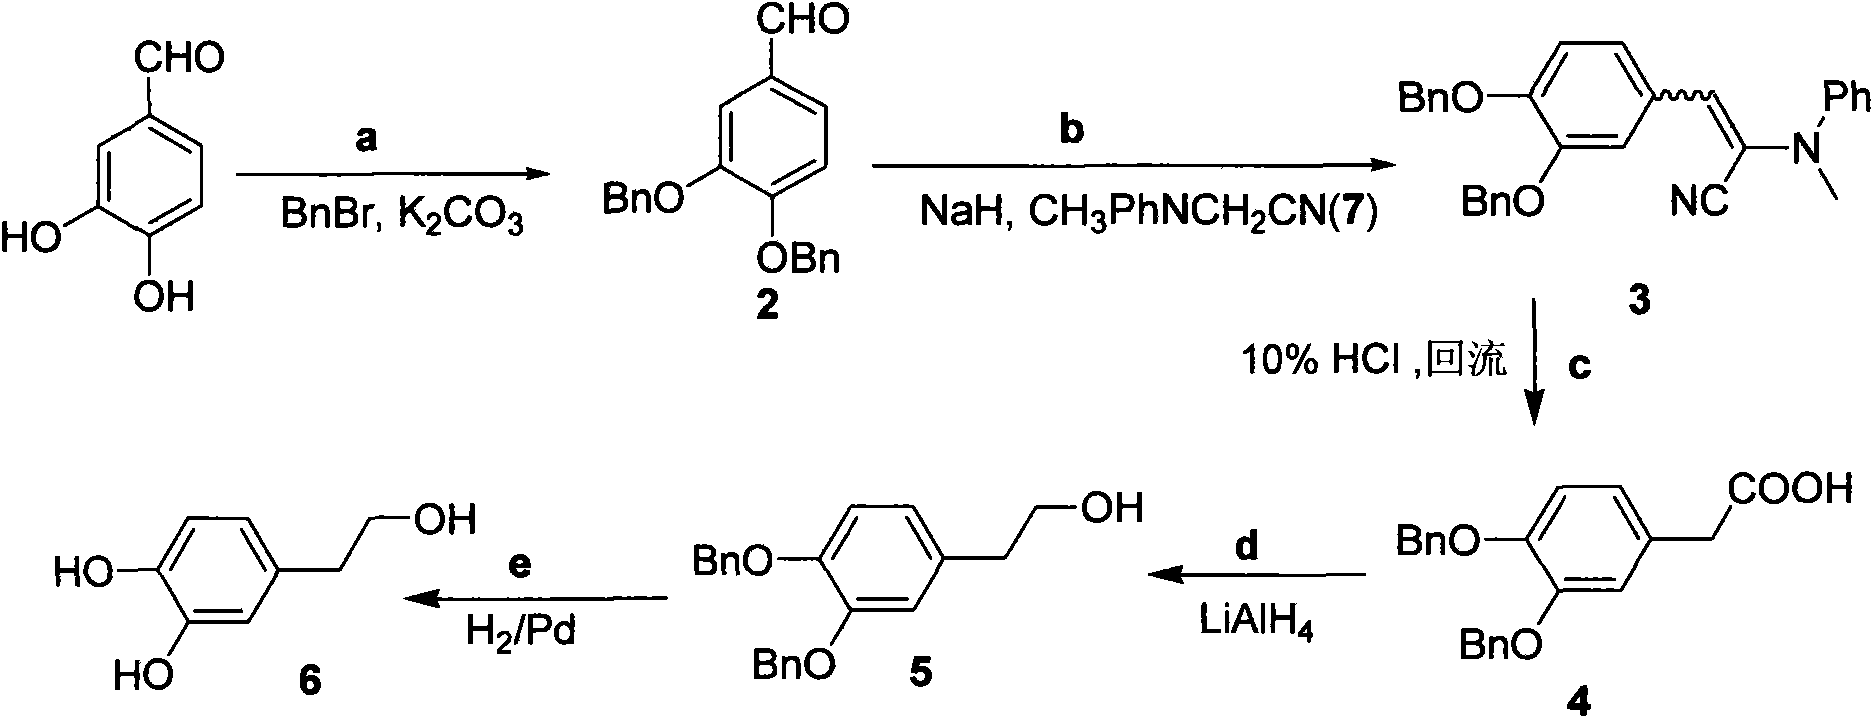 Method for preparing hydroxytyrosol